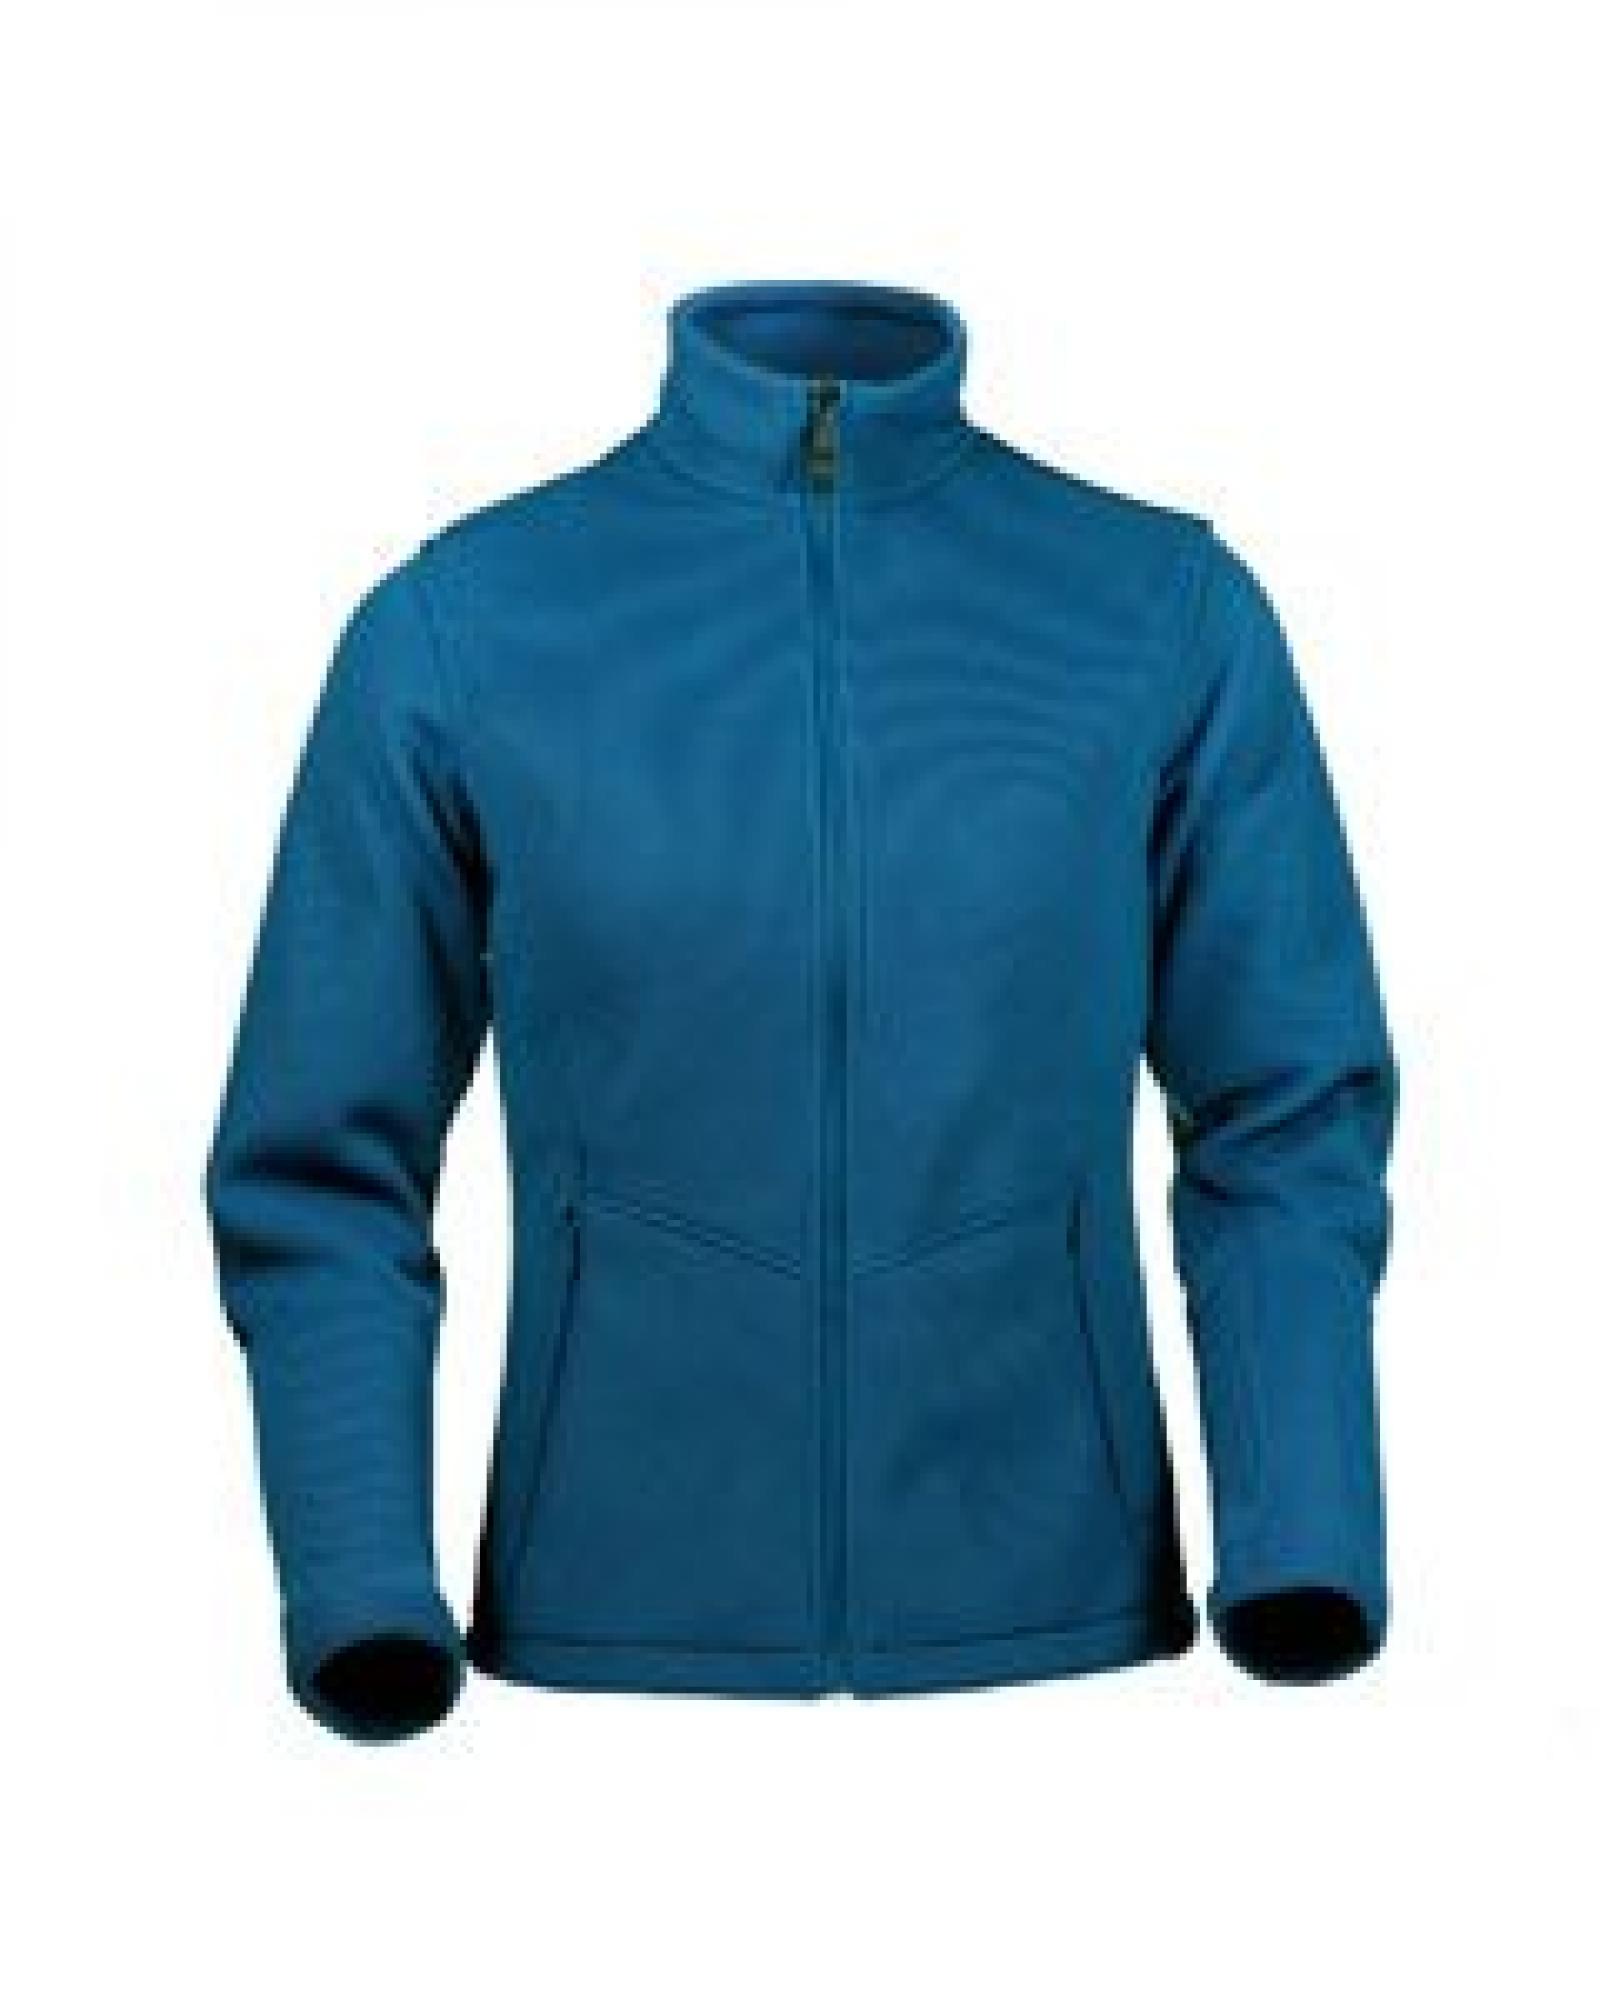 Womens IronWeave Bonded Fleece Jacket NAVY - 3XL 